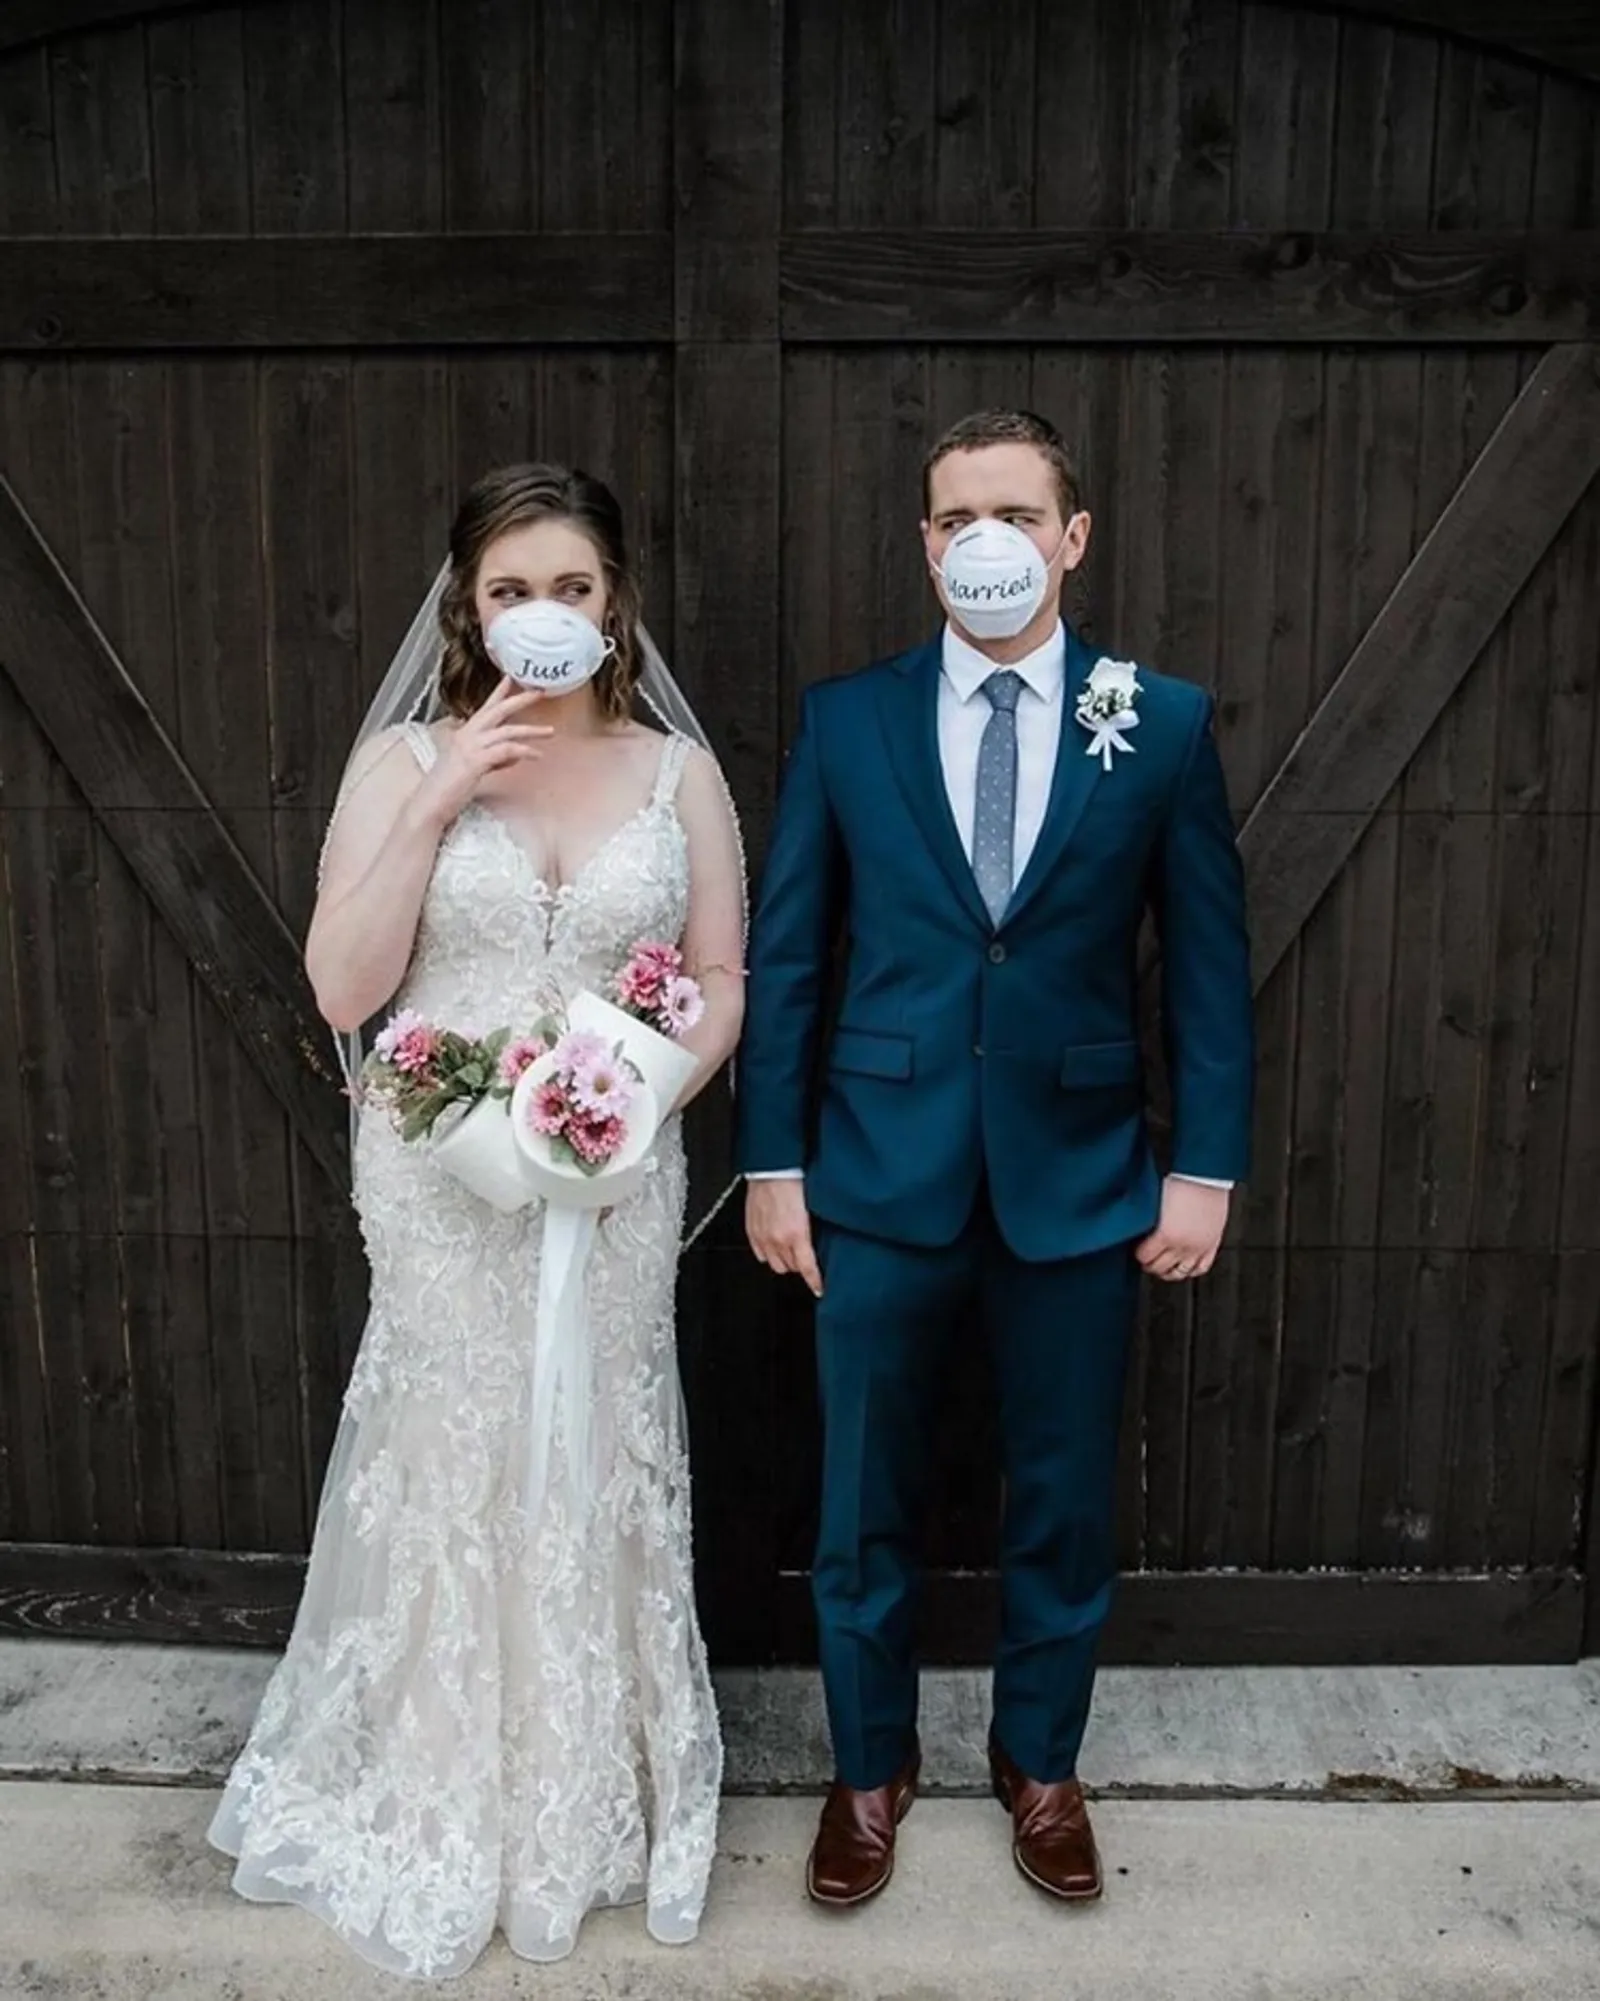 Ubah Rencana Akibat Pandemi, 10 Momen Pernikahan Ini Tetap Romantis